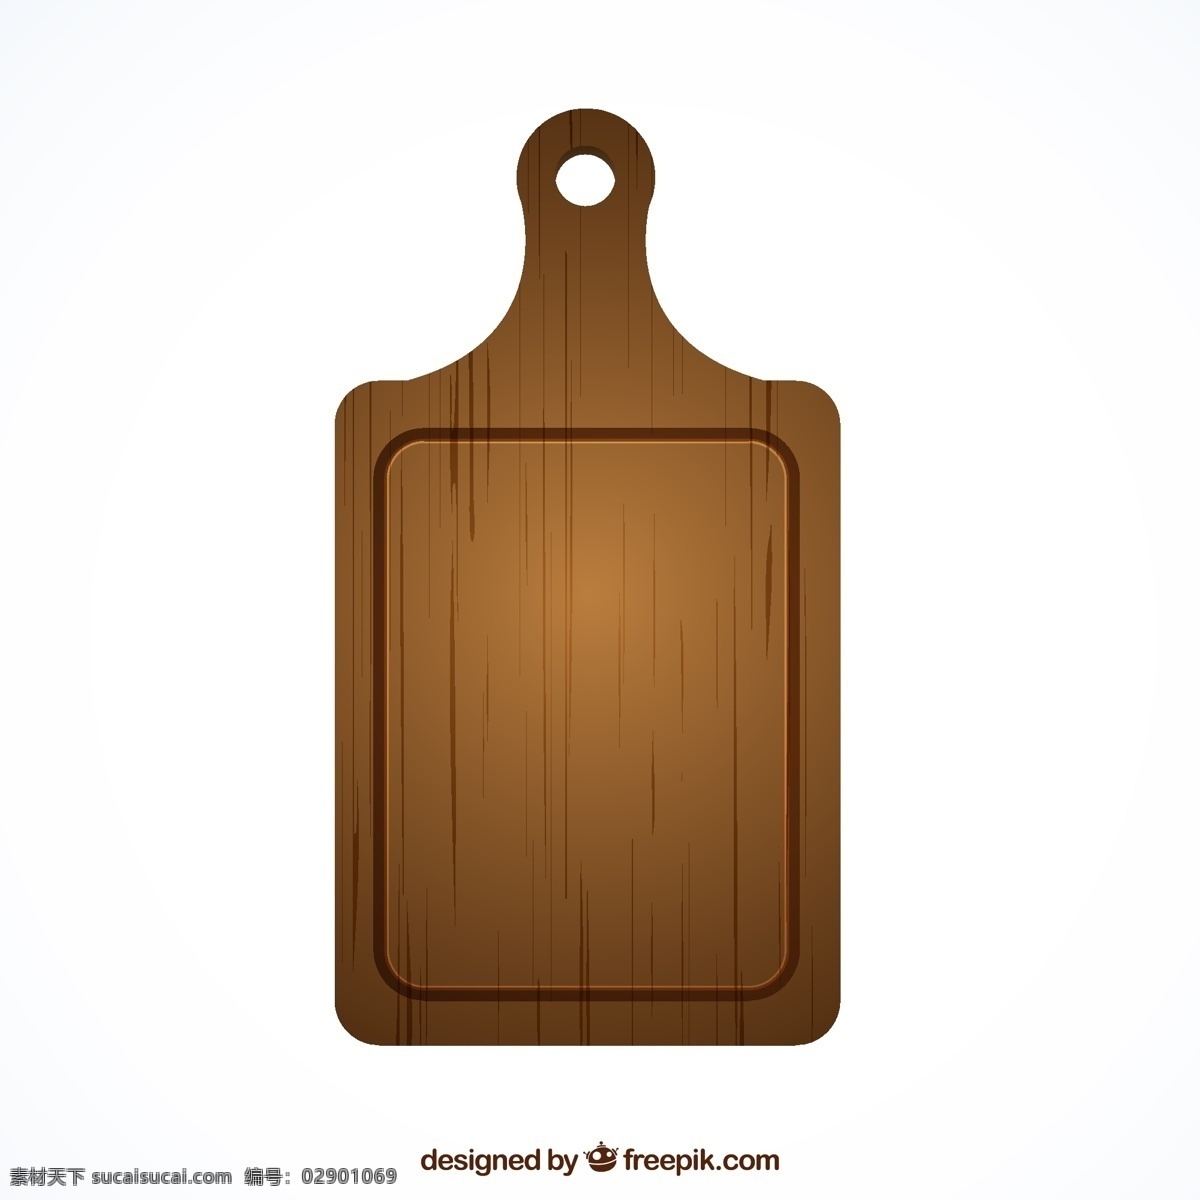 木菜板矢量 厨具 厨房用品 菜板 木制 砧板 矢量图 ai格式